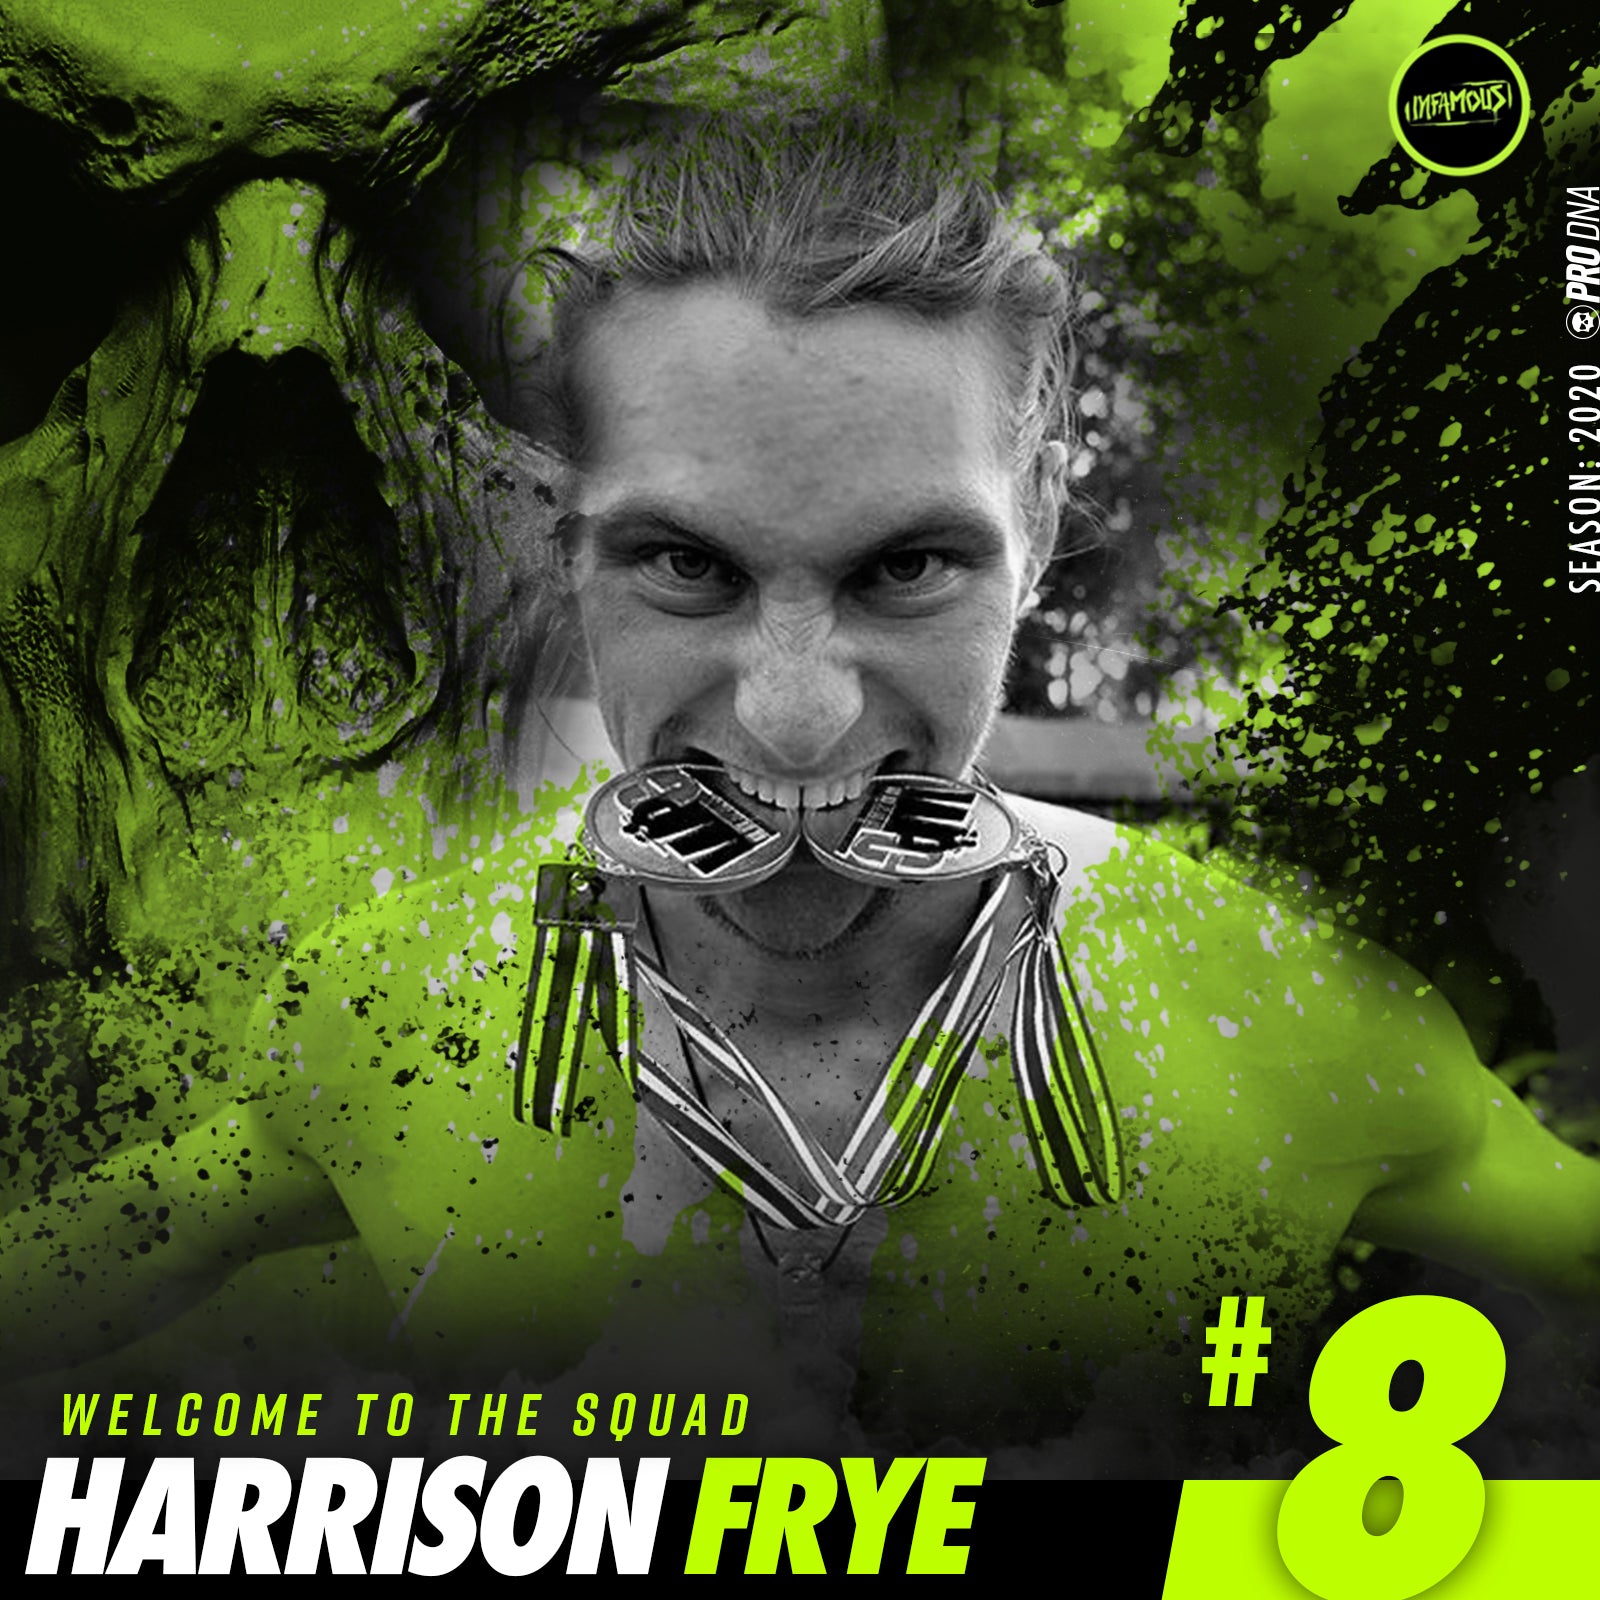 Harrison Frye Joins Infamous!